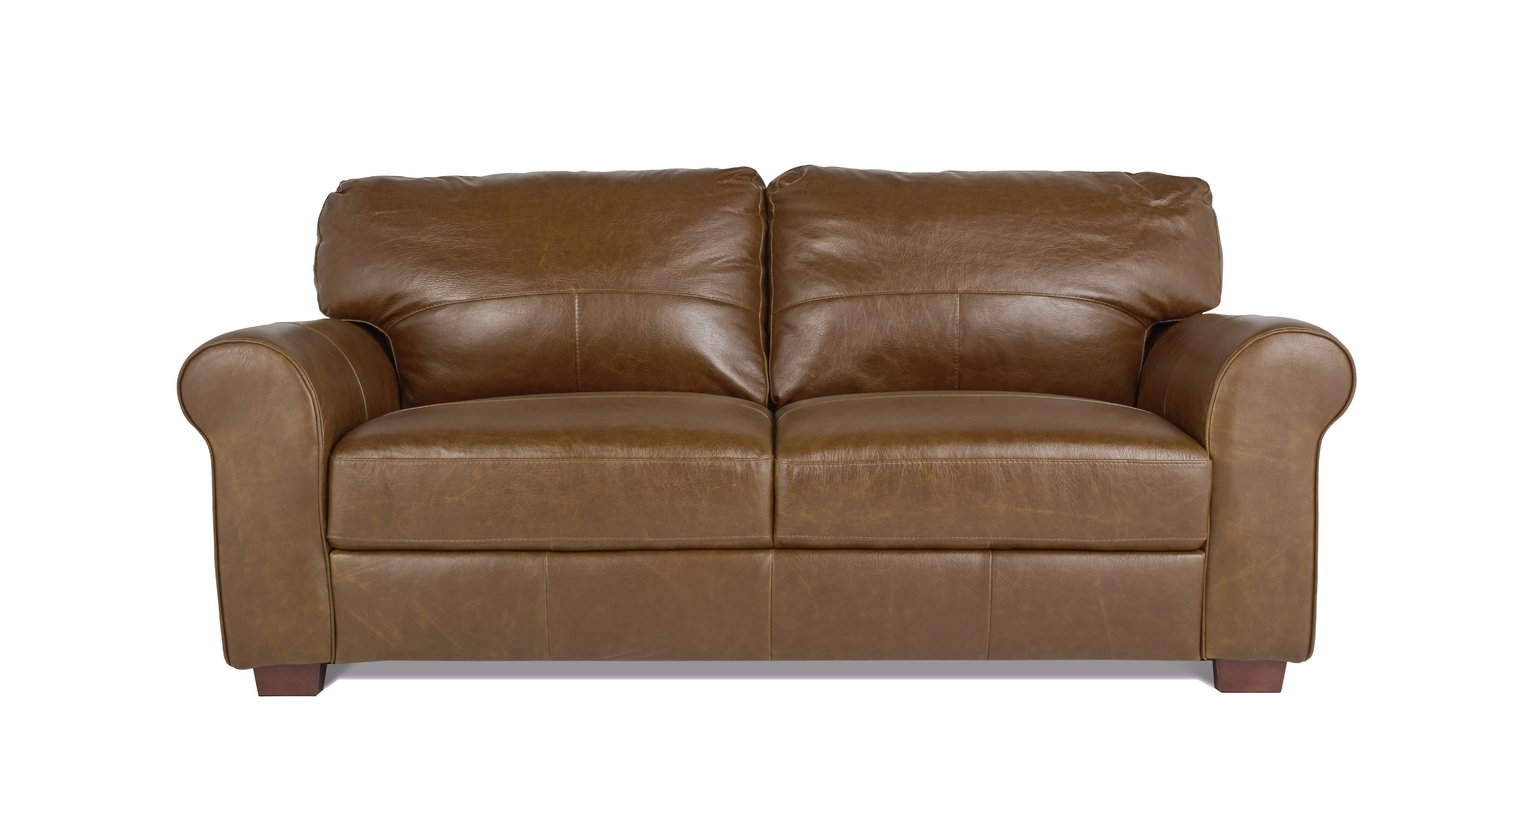 argos tan leather sofa